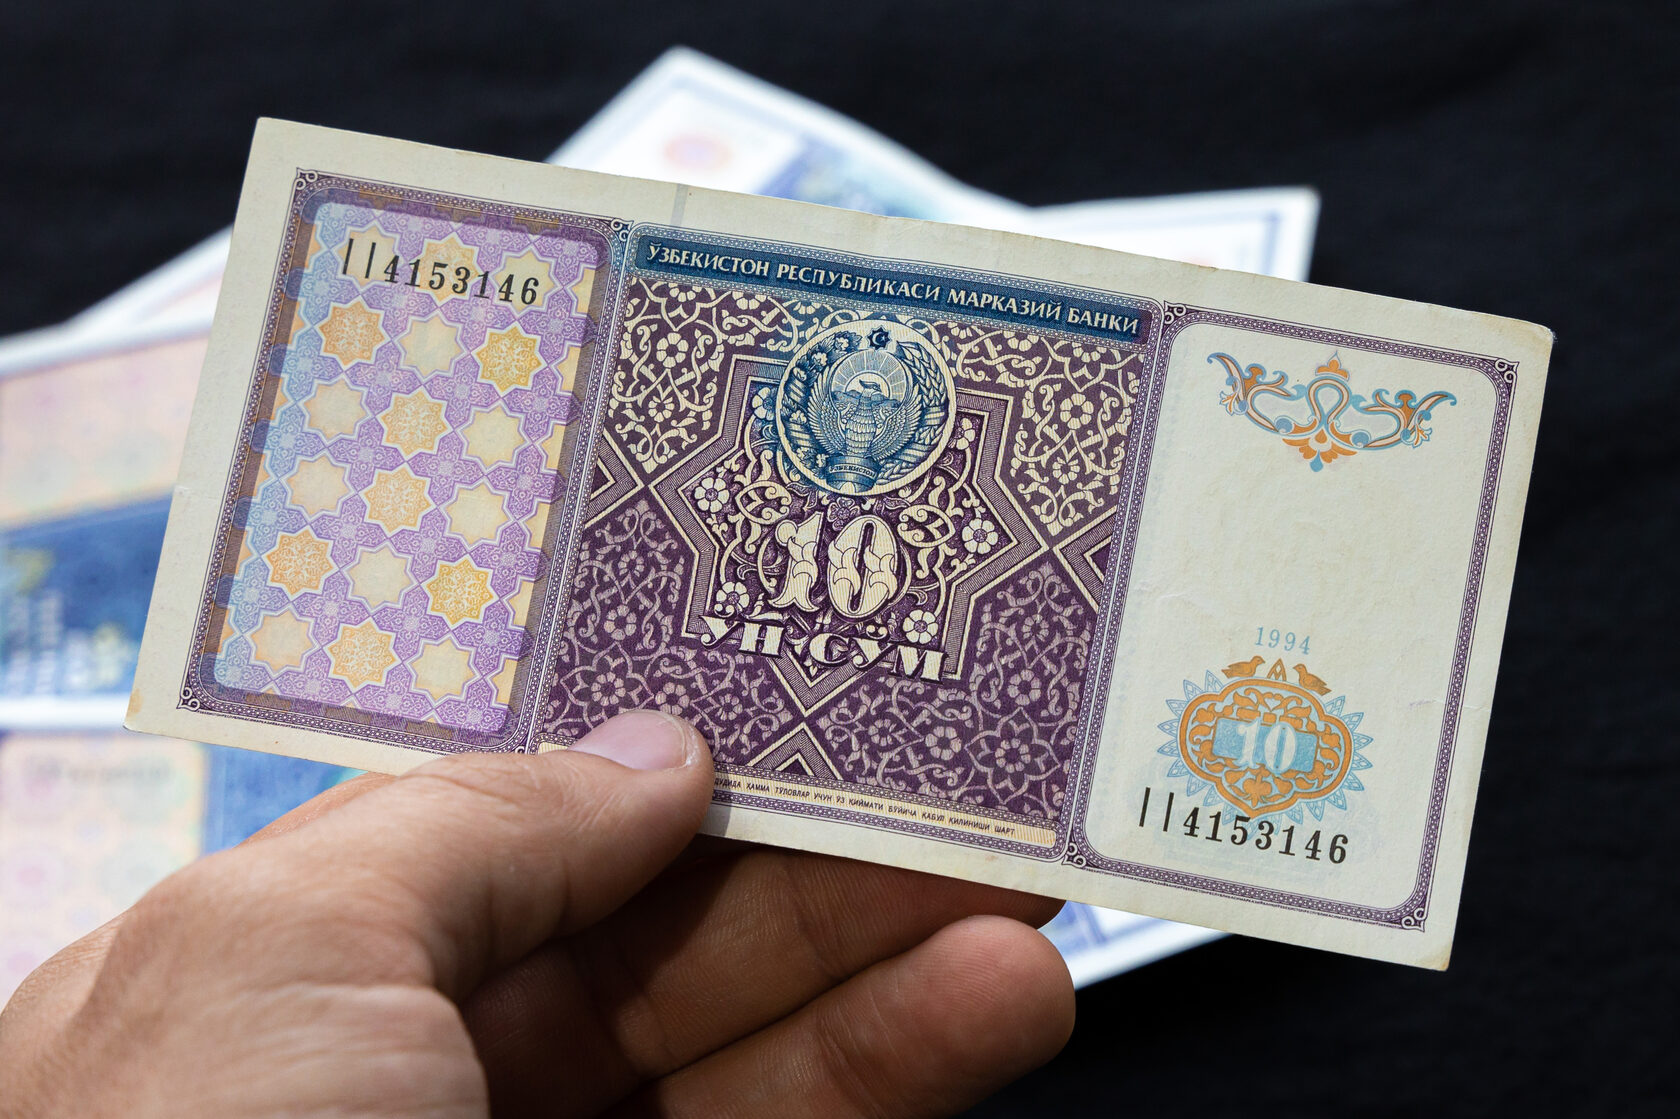 1 сўмлик купондан 100 минг сўмликкача: Ўзбекистоннинг барча банкнотлари расмларда